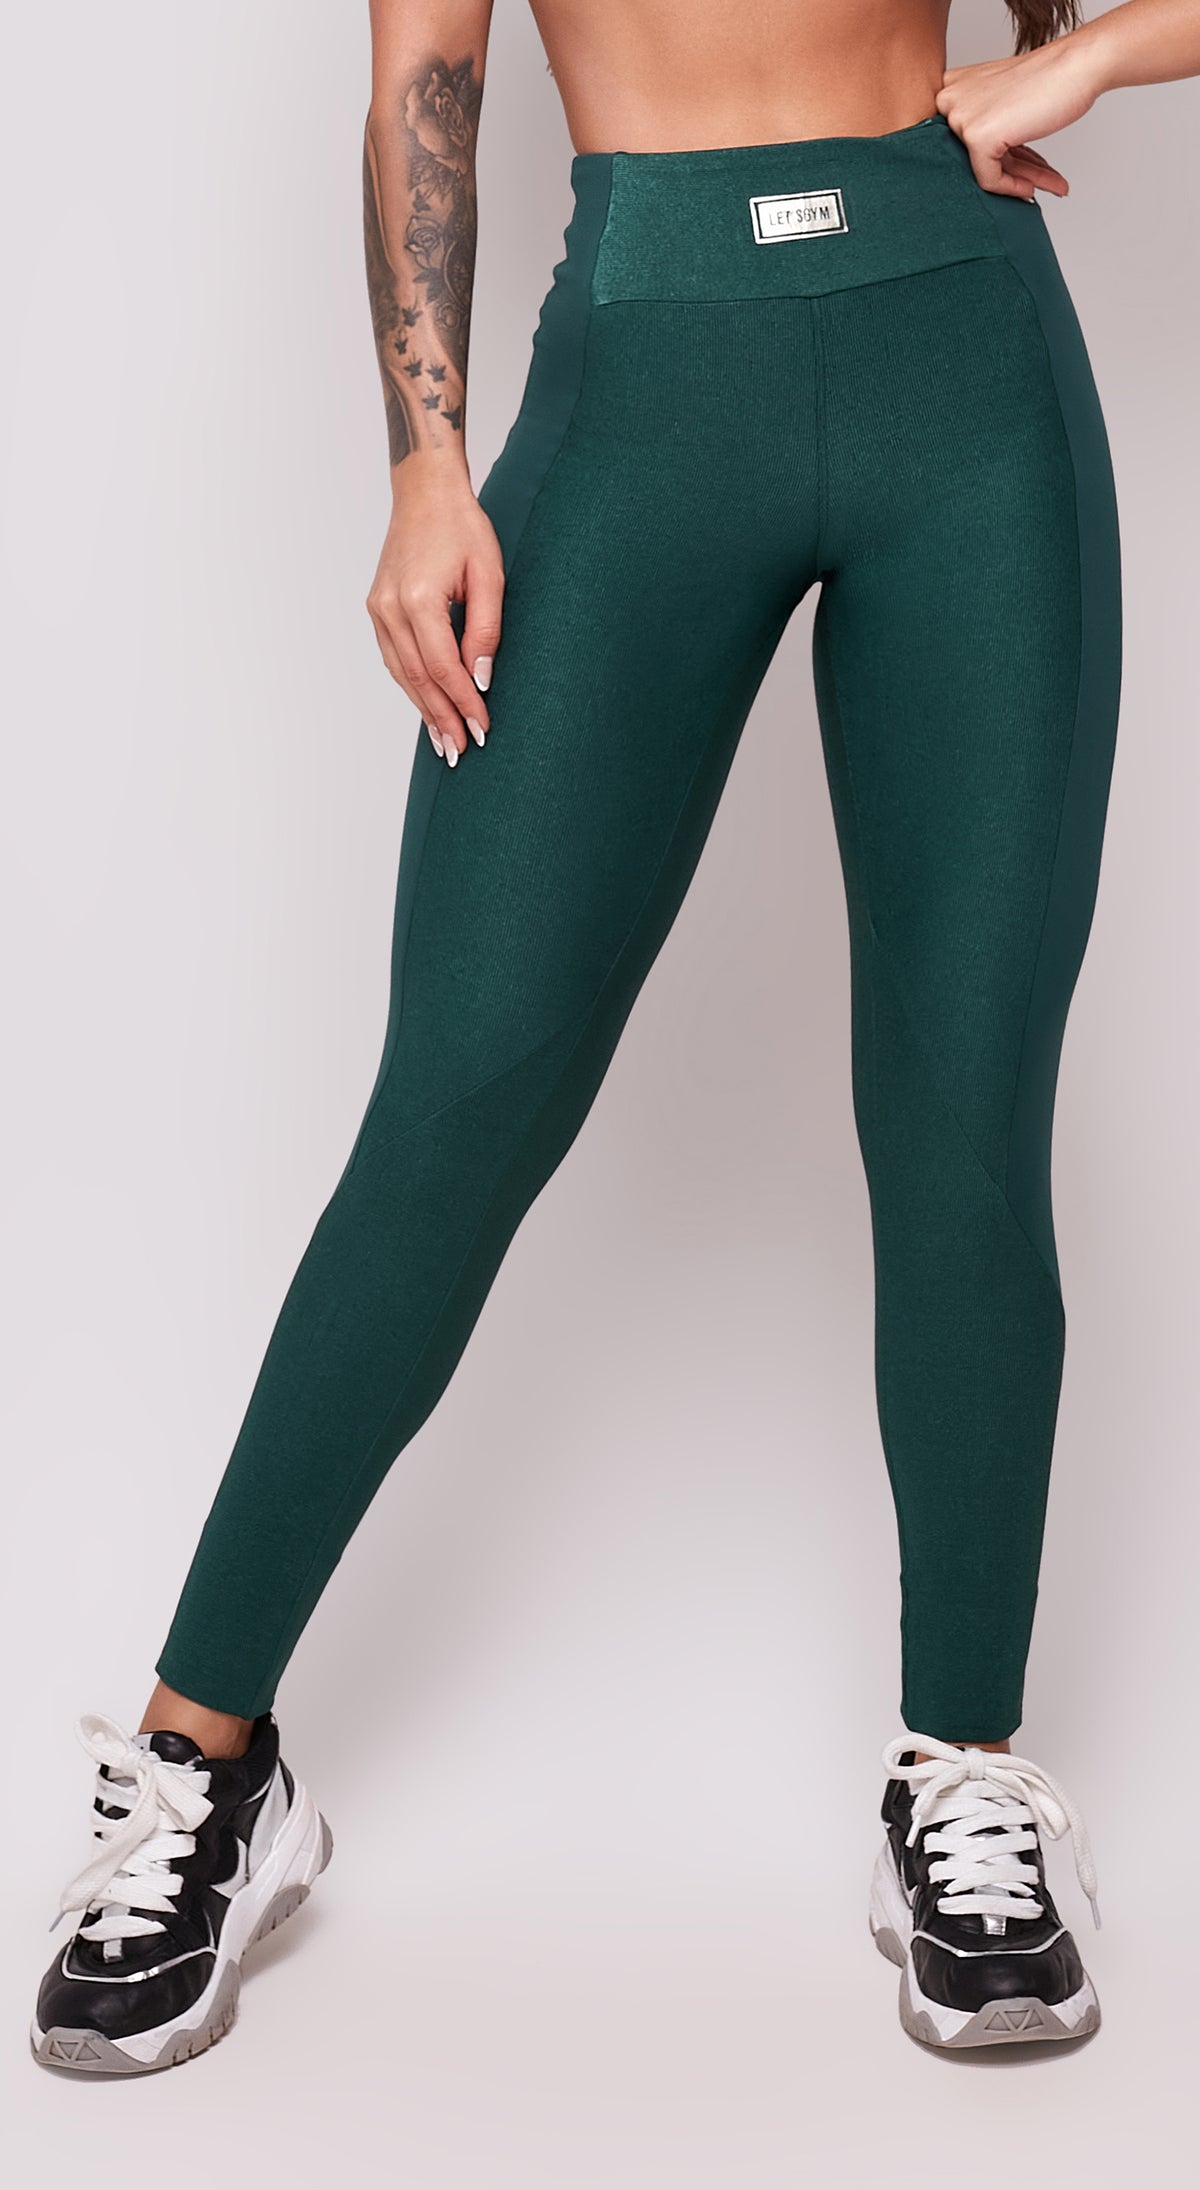 Luxia Legging - Emerald Green